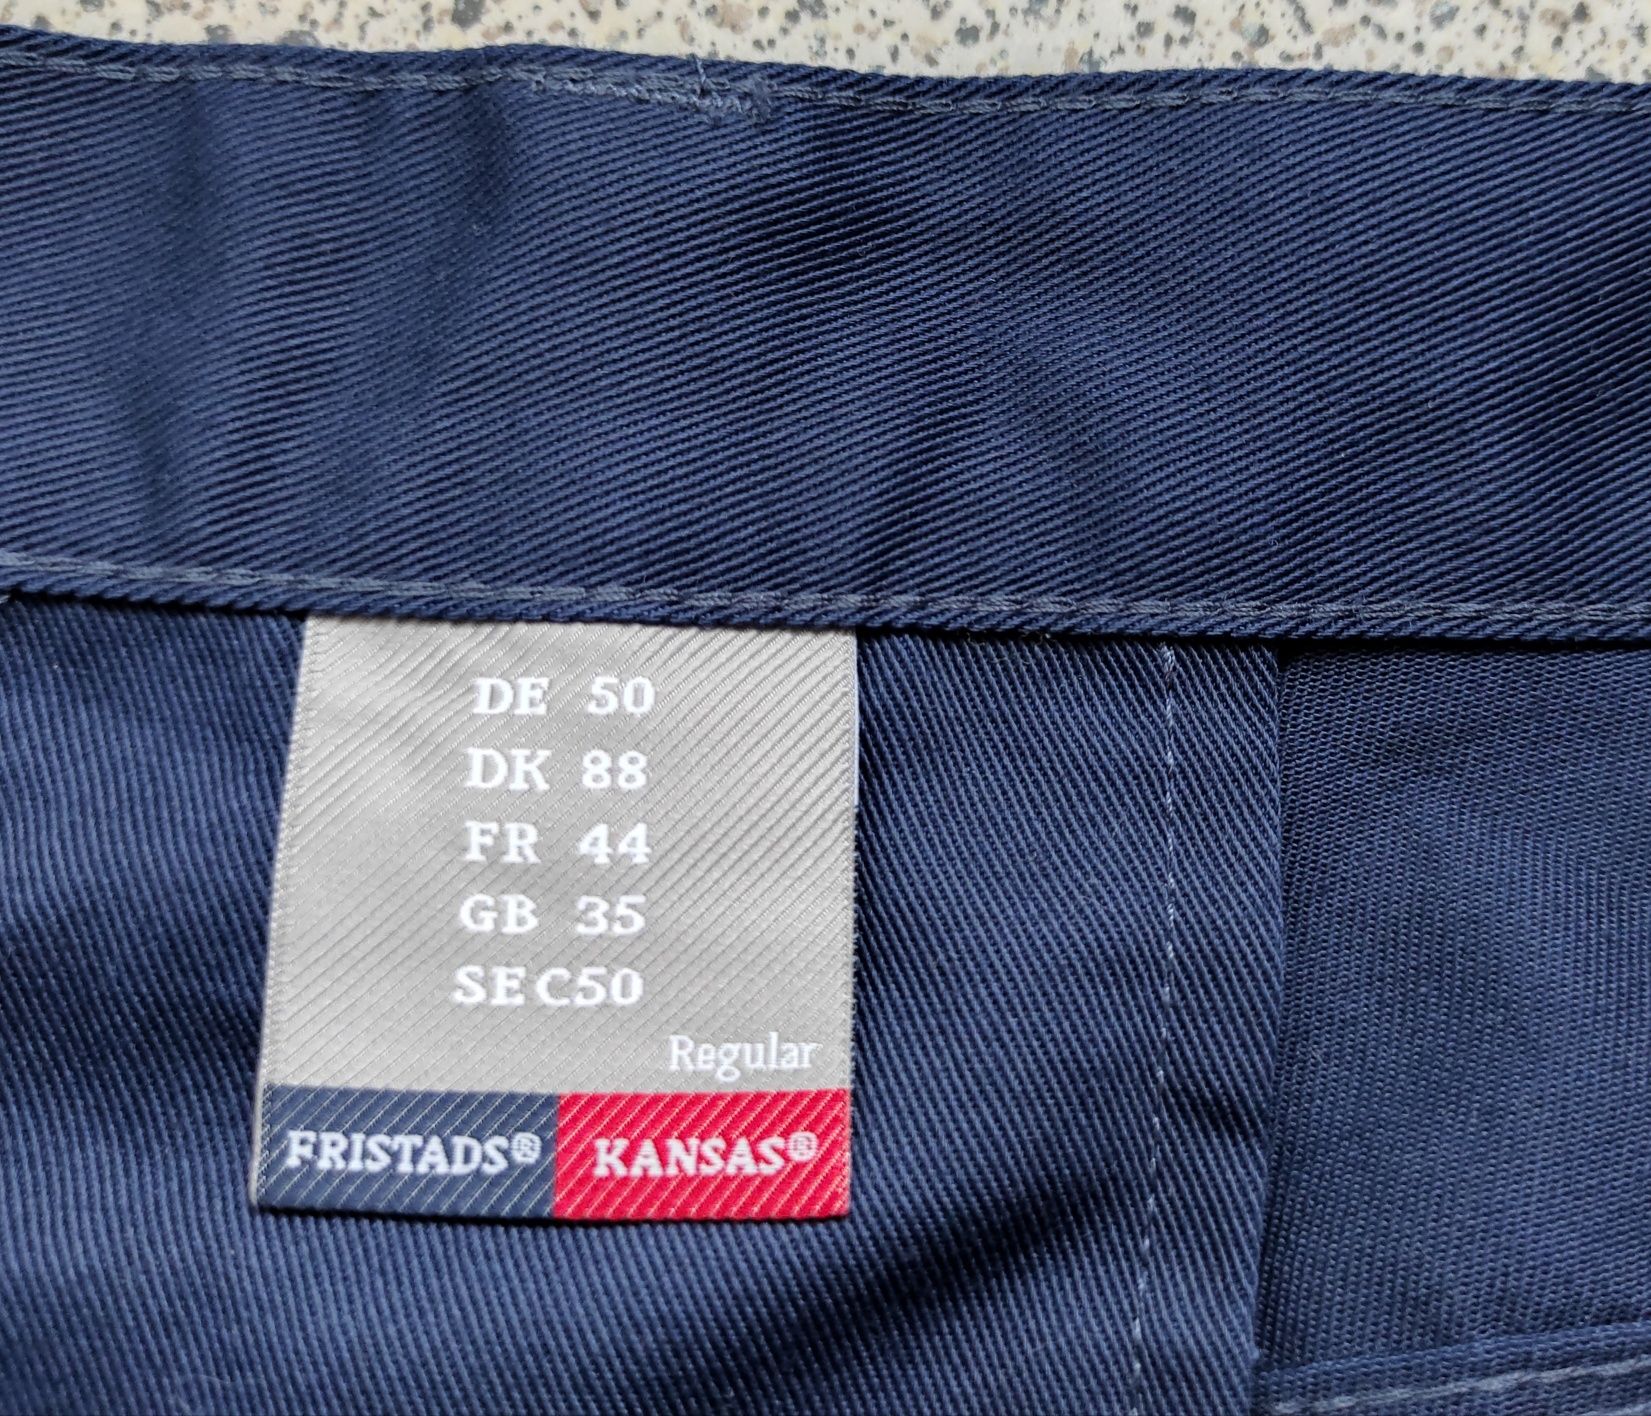 Робочі штани, рабочие брюки Kansas Fristads. Розмір 50.